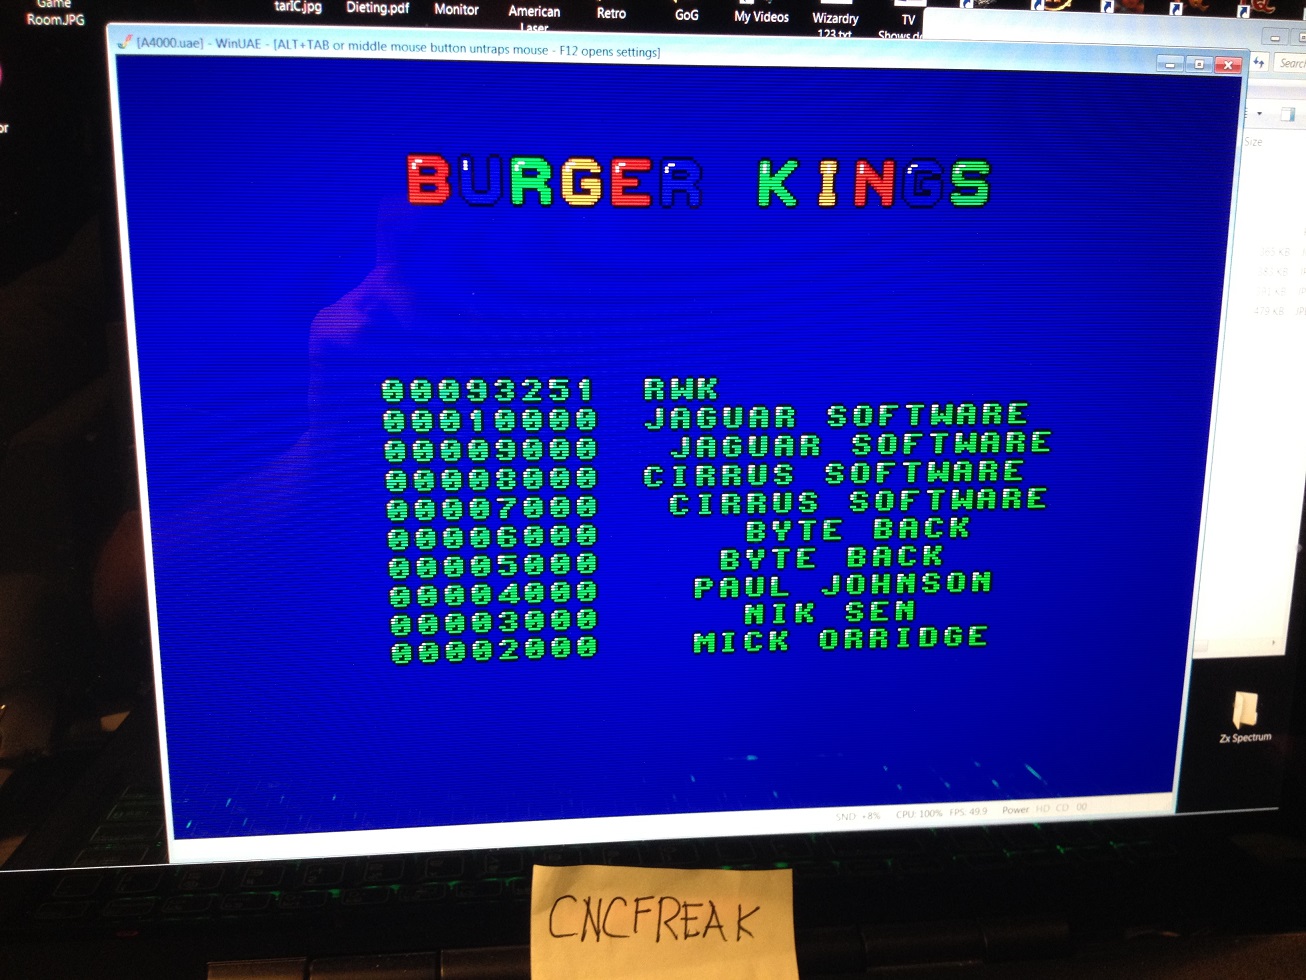 cncfreak: Burger Man (Amiga Emulated) 93,251 points on 2013-10-16 23:22:20